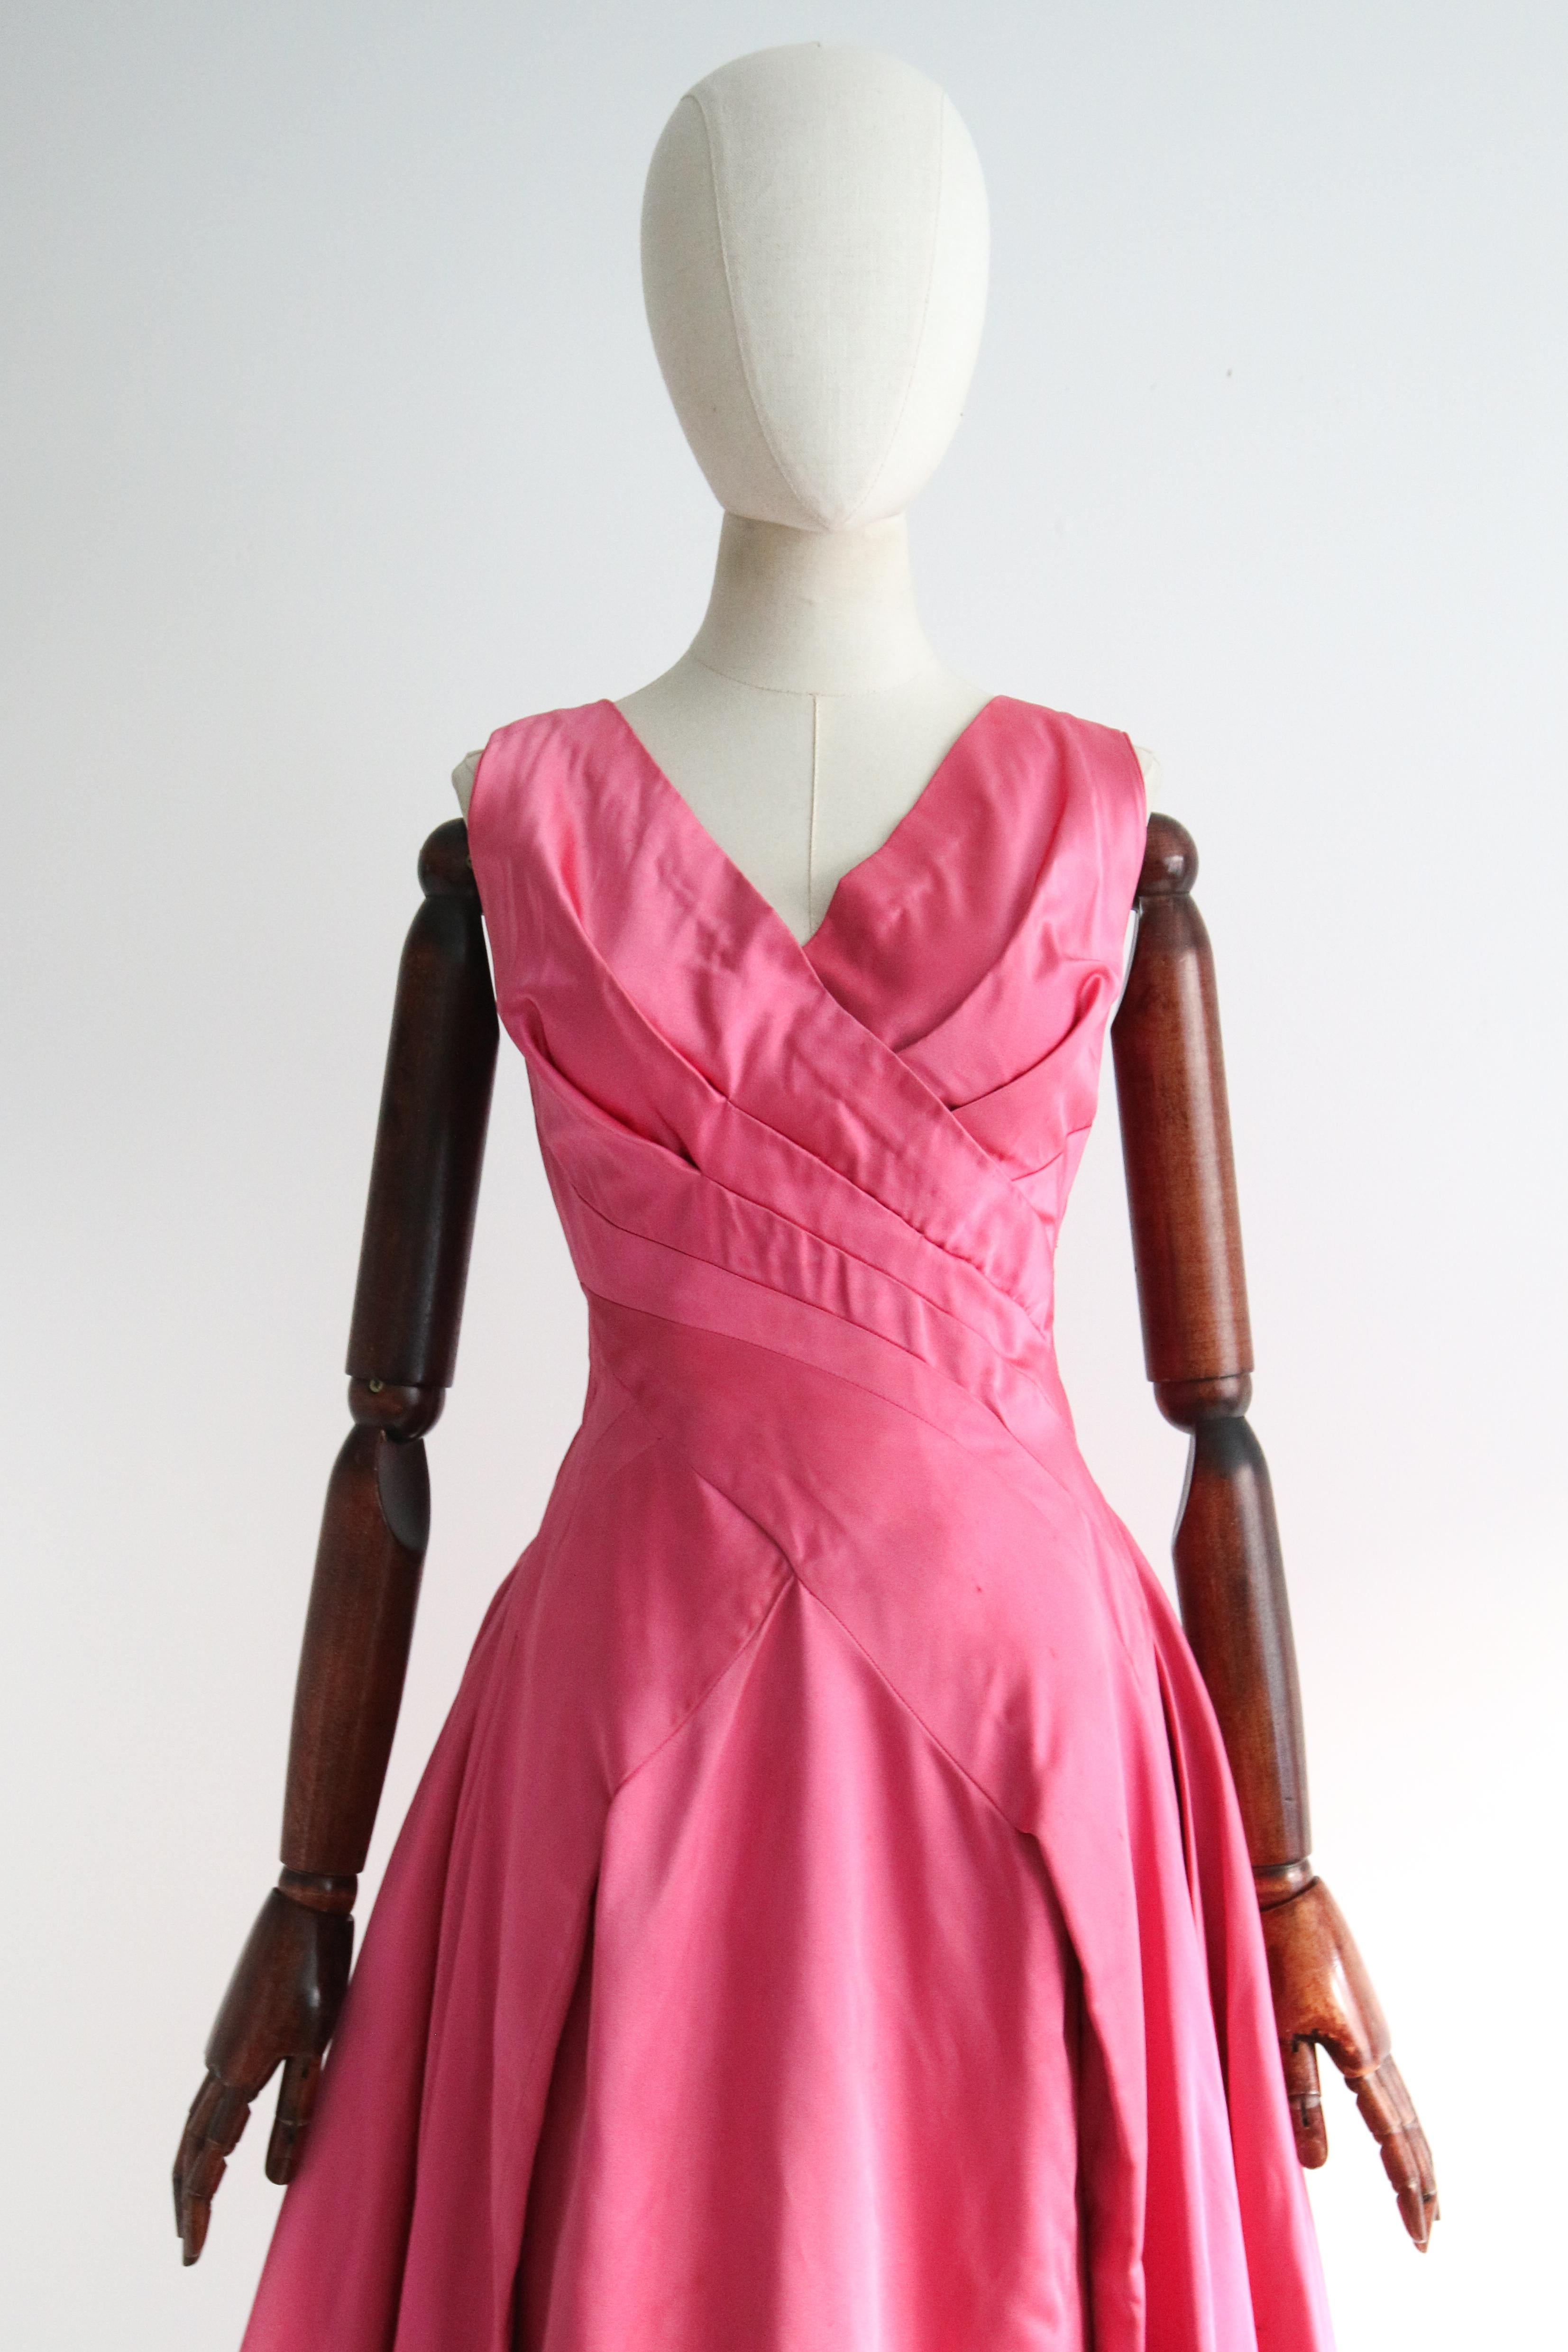 Eine wahre Schönheit, die sich sehen lassen kann. Dieses original 1950er Herzogin-Satin-Kleid in einem zarten Rosaton und mit göttlichen Falten ist eine zeitlose Schönheit und ein Muss für Ihre Vintage-Sammlung. 

Der V-förmige, überkreuzte